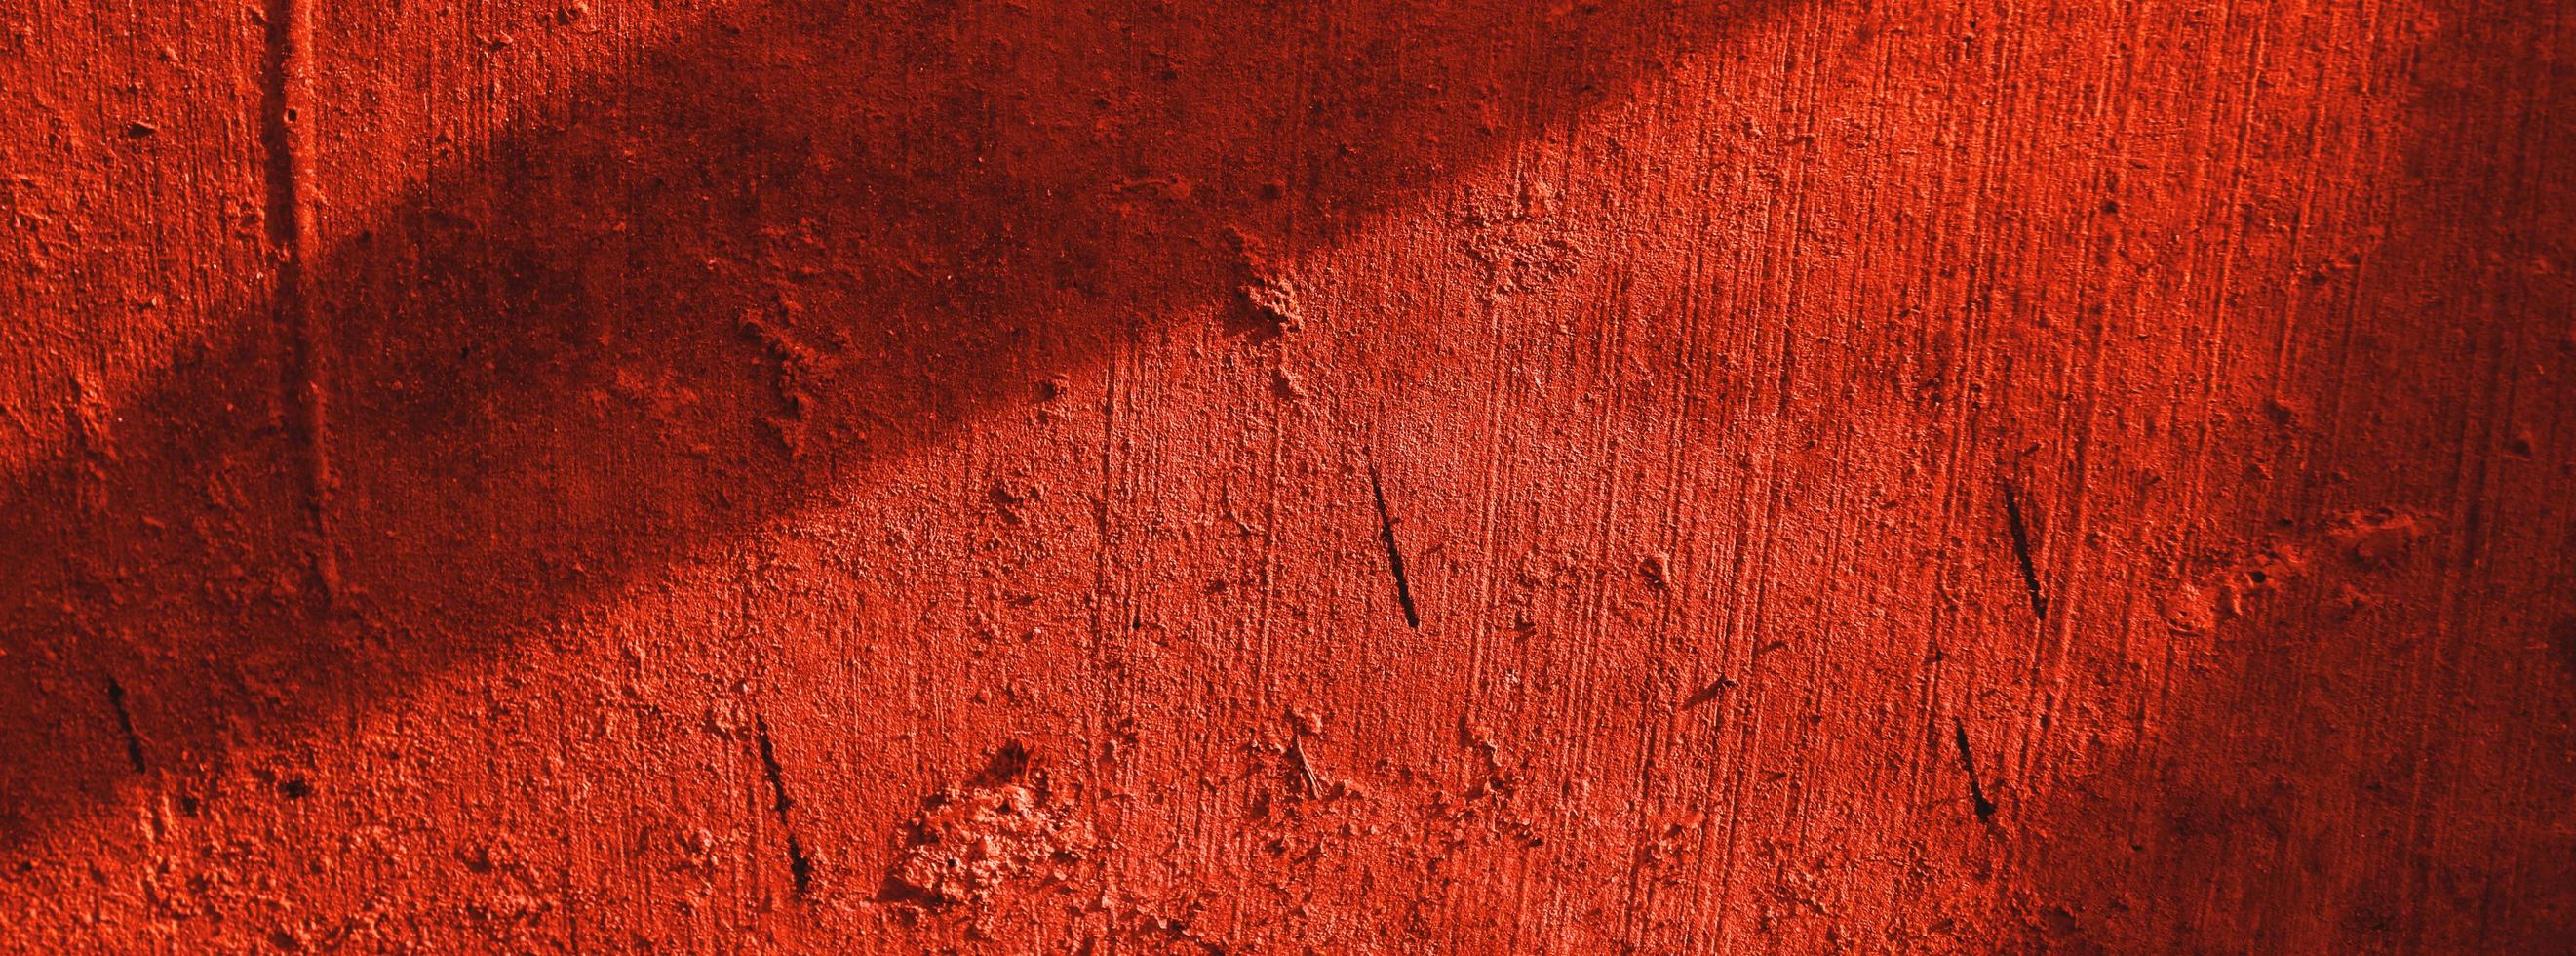 mur rouge. fond effrayant. mur de béton plâtré fond de rayures rouges. texture grunge. photo